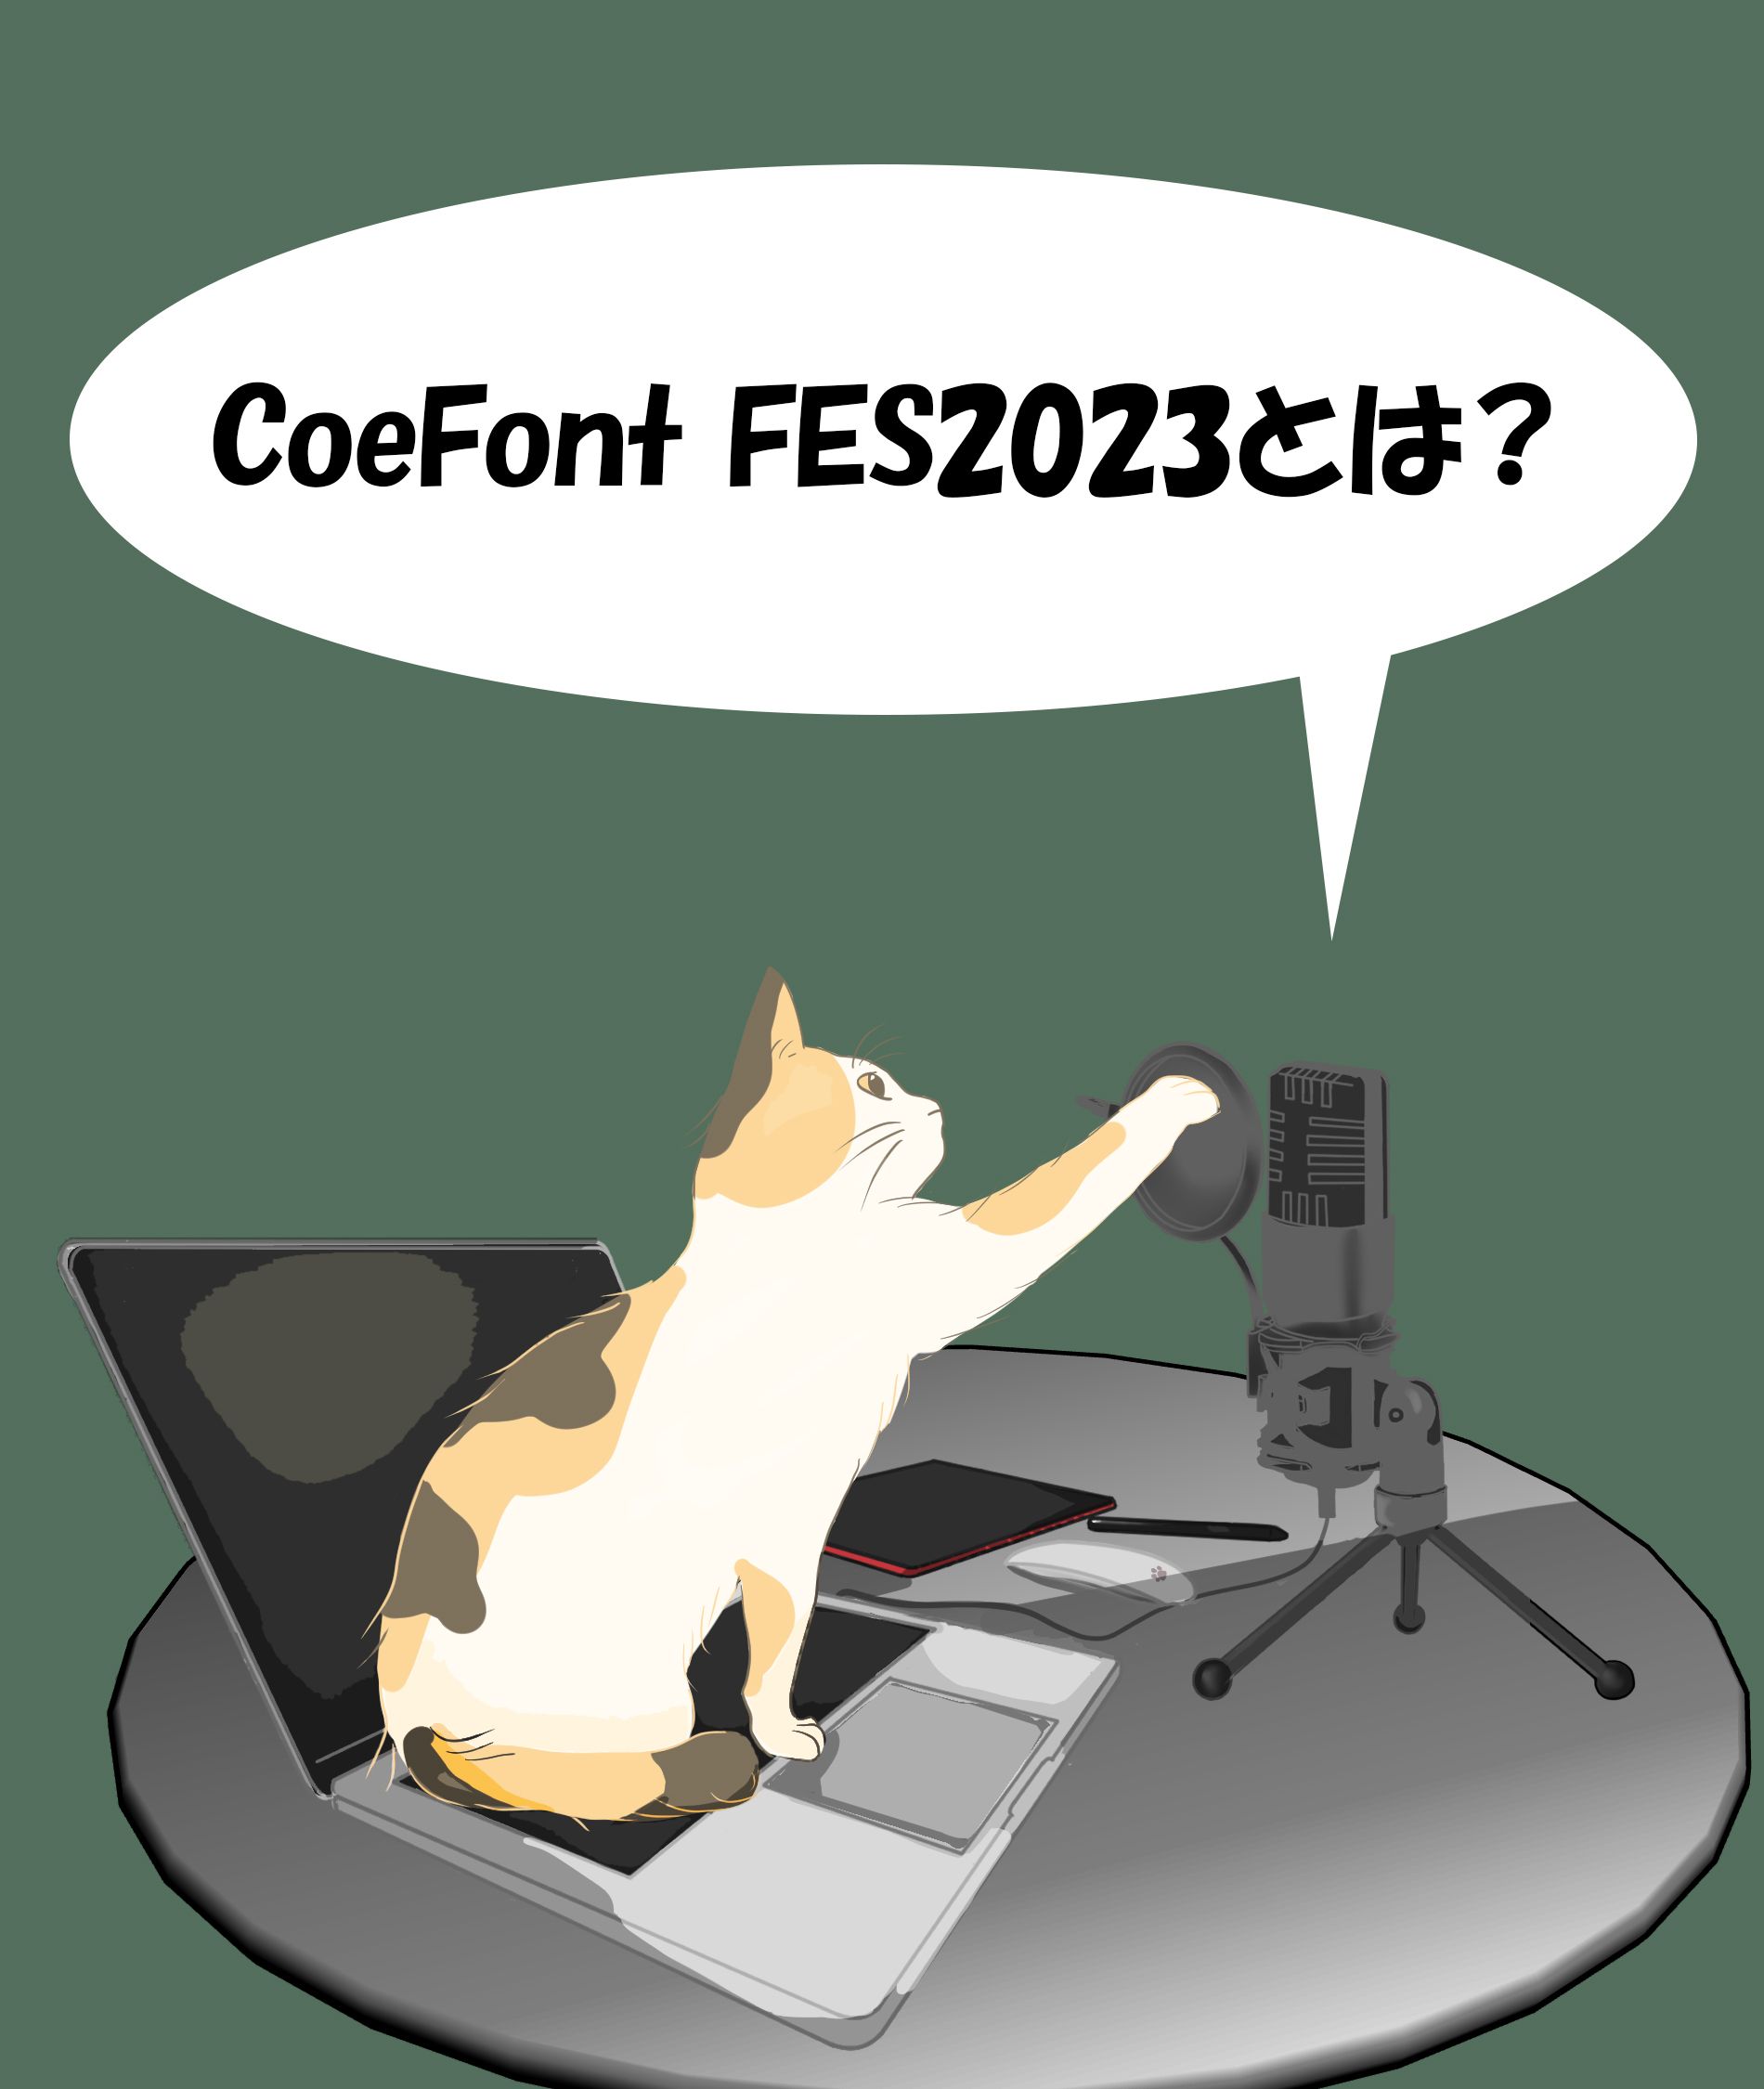 ■CoeFont FES2023 とは？